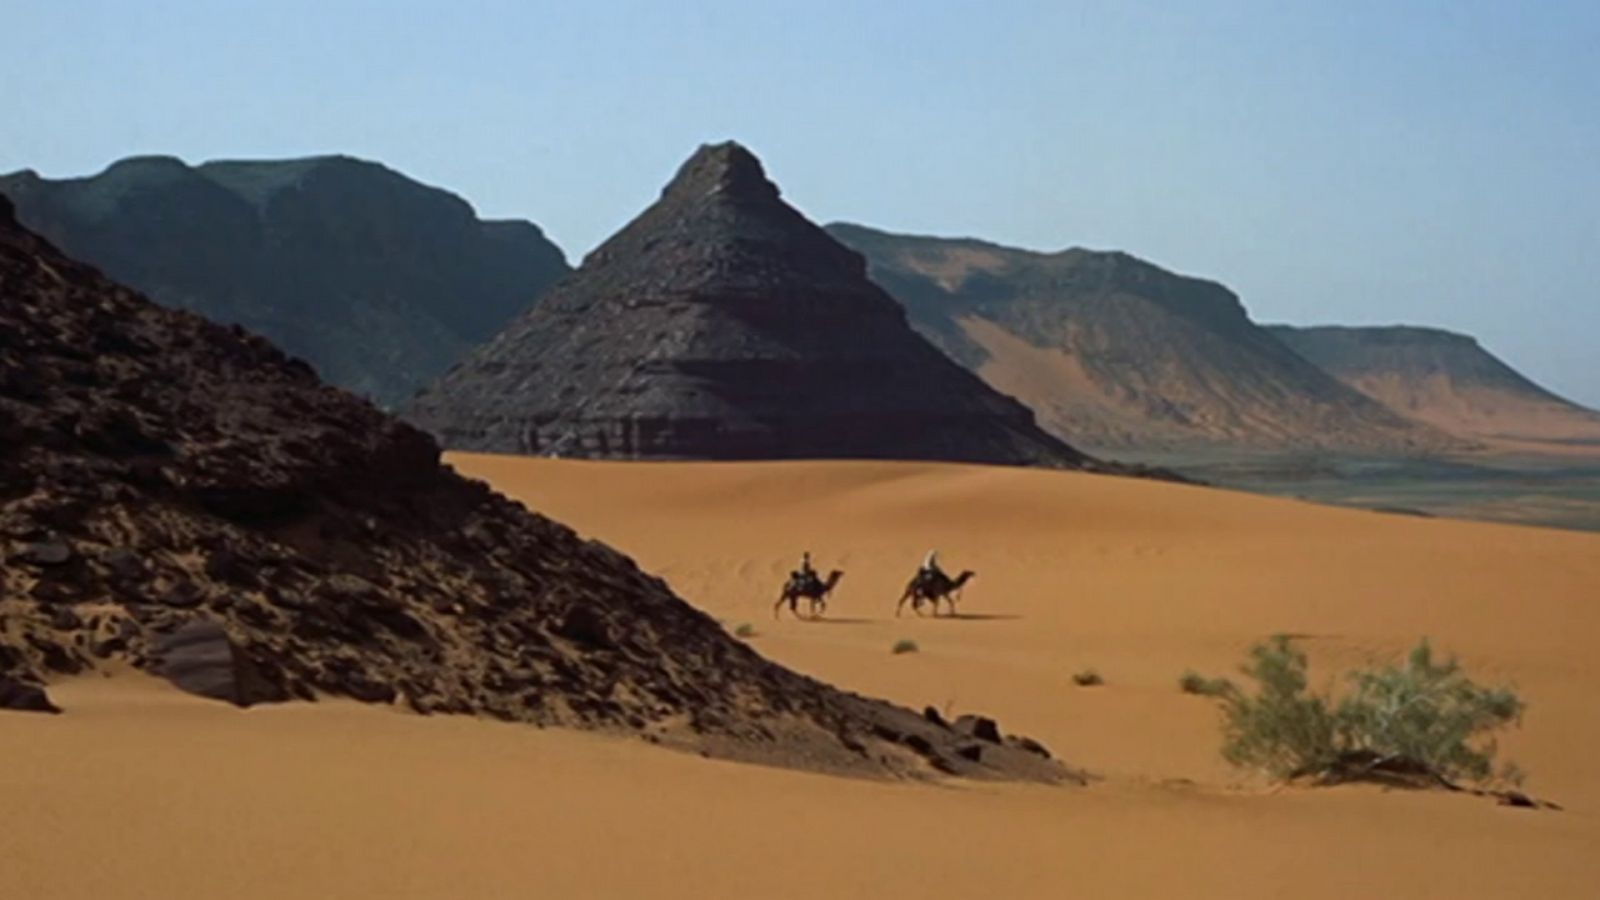 Días de cine clásico - Lawrence de Arabia (presentación)